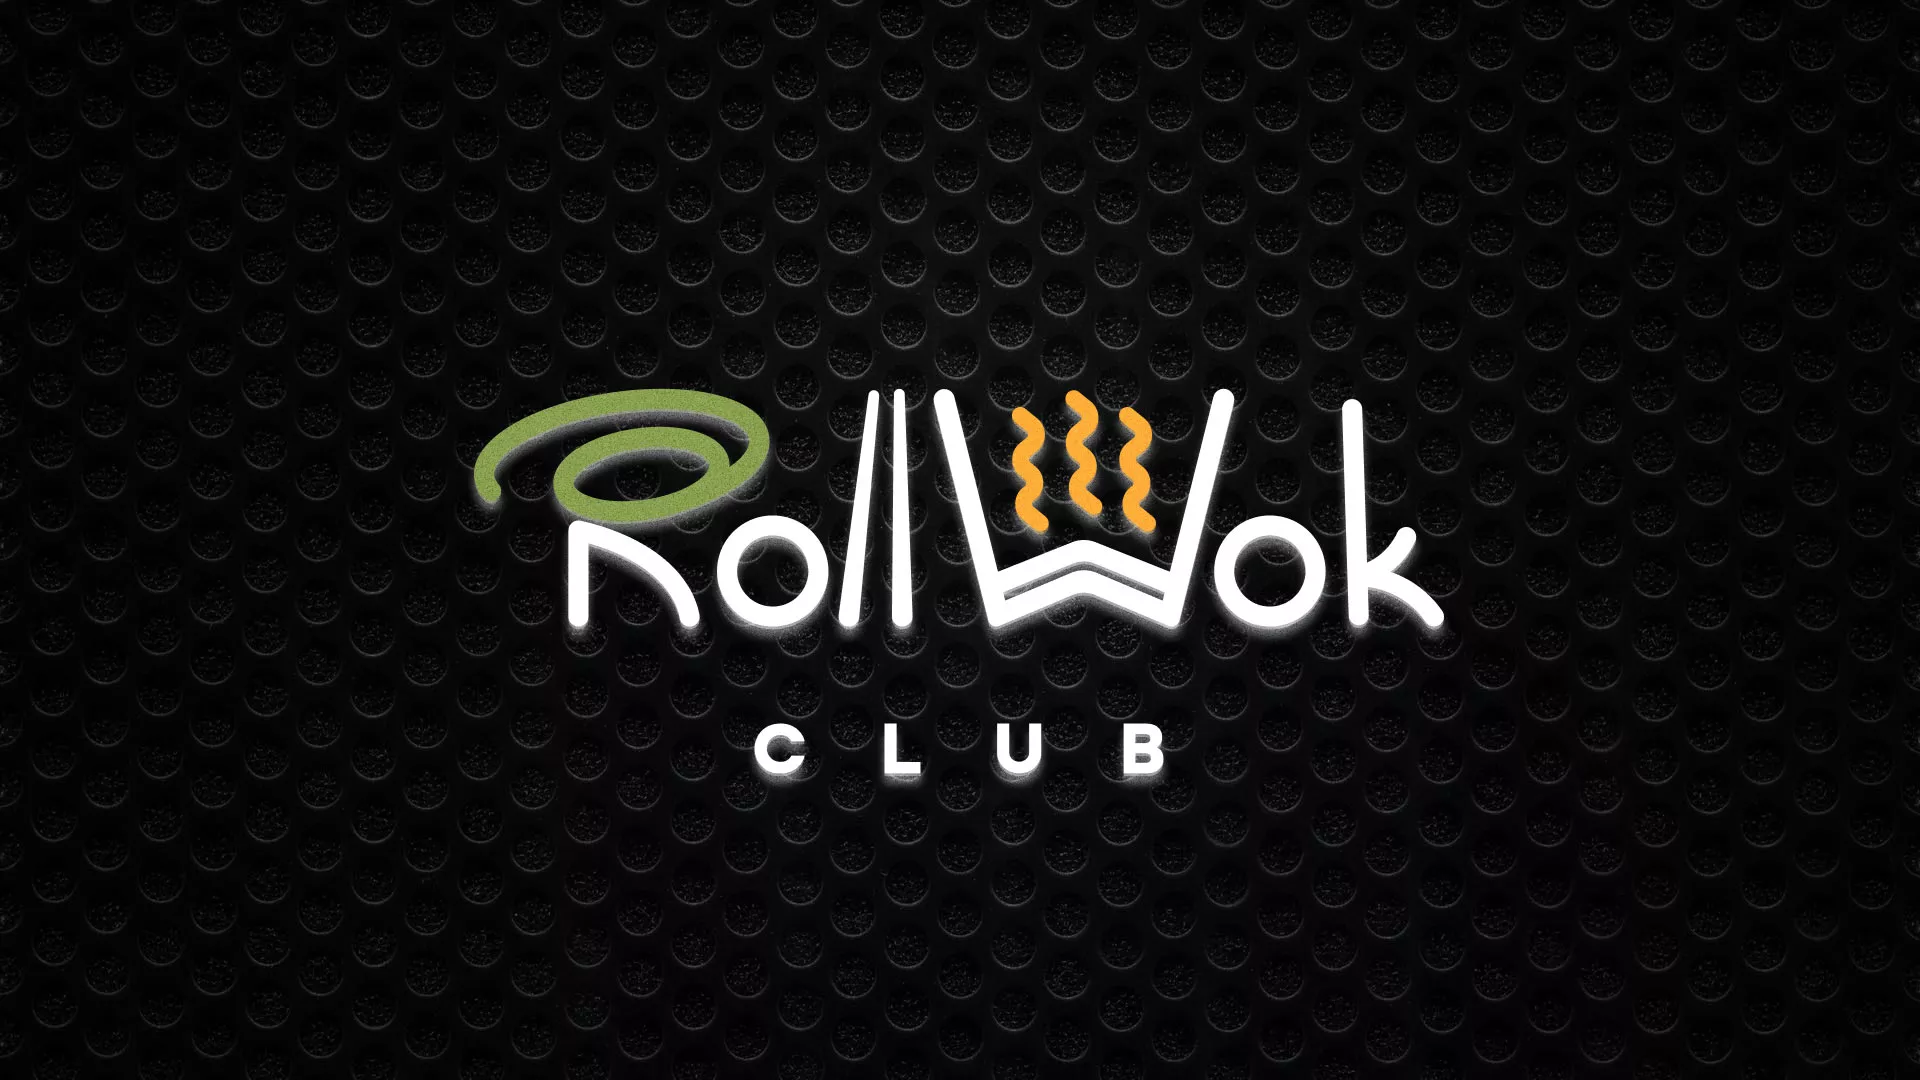 Брендирование торговых точек суши-бара «Roll Wok Club» в Славске